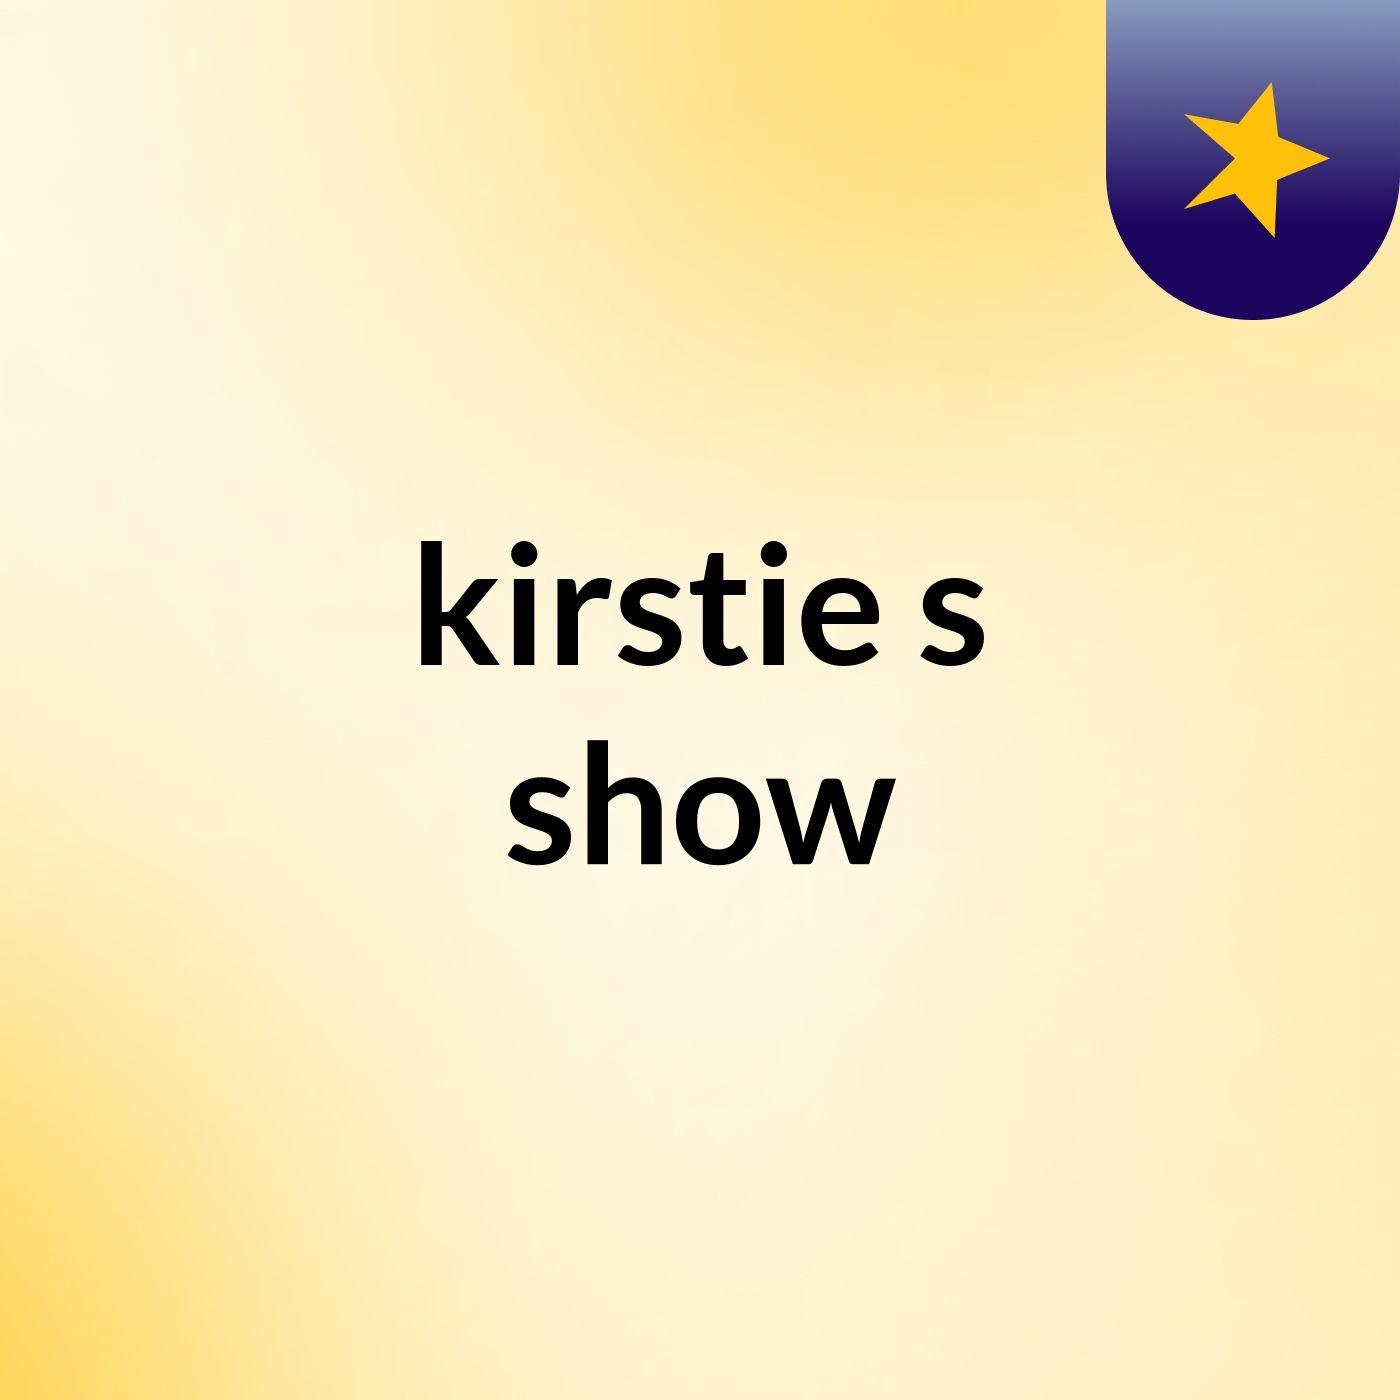 kirstie's show